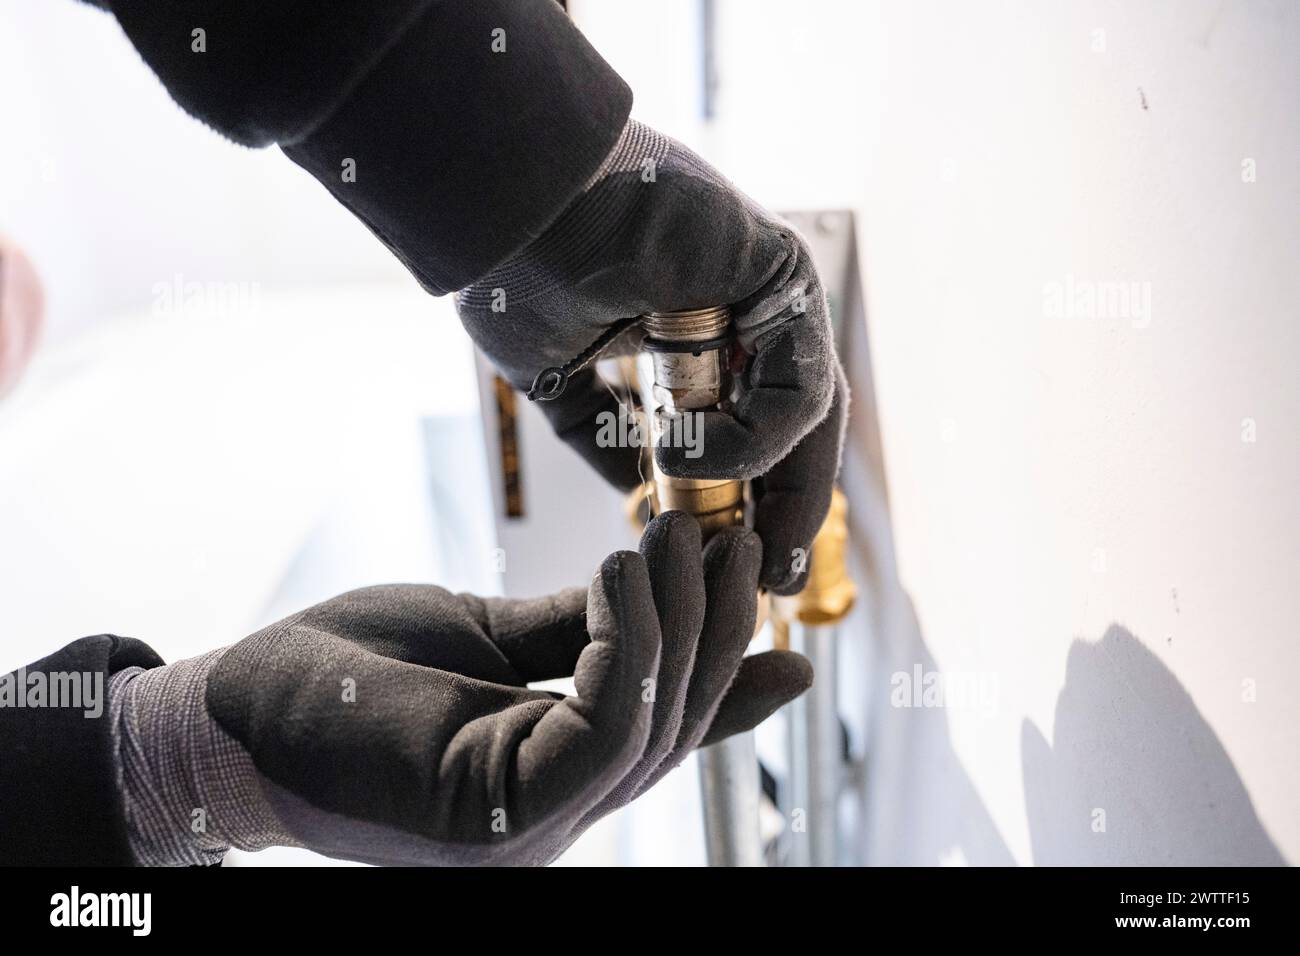 Mani che regolano con cautela una lampadina in un apparecchio. Foto Stock